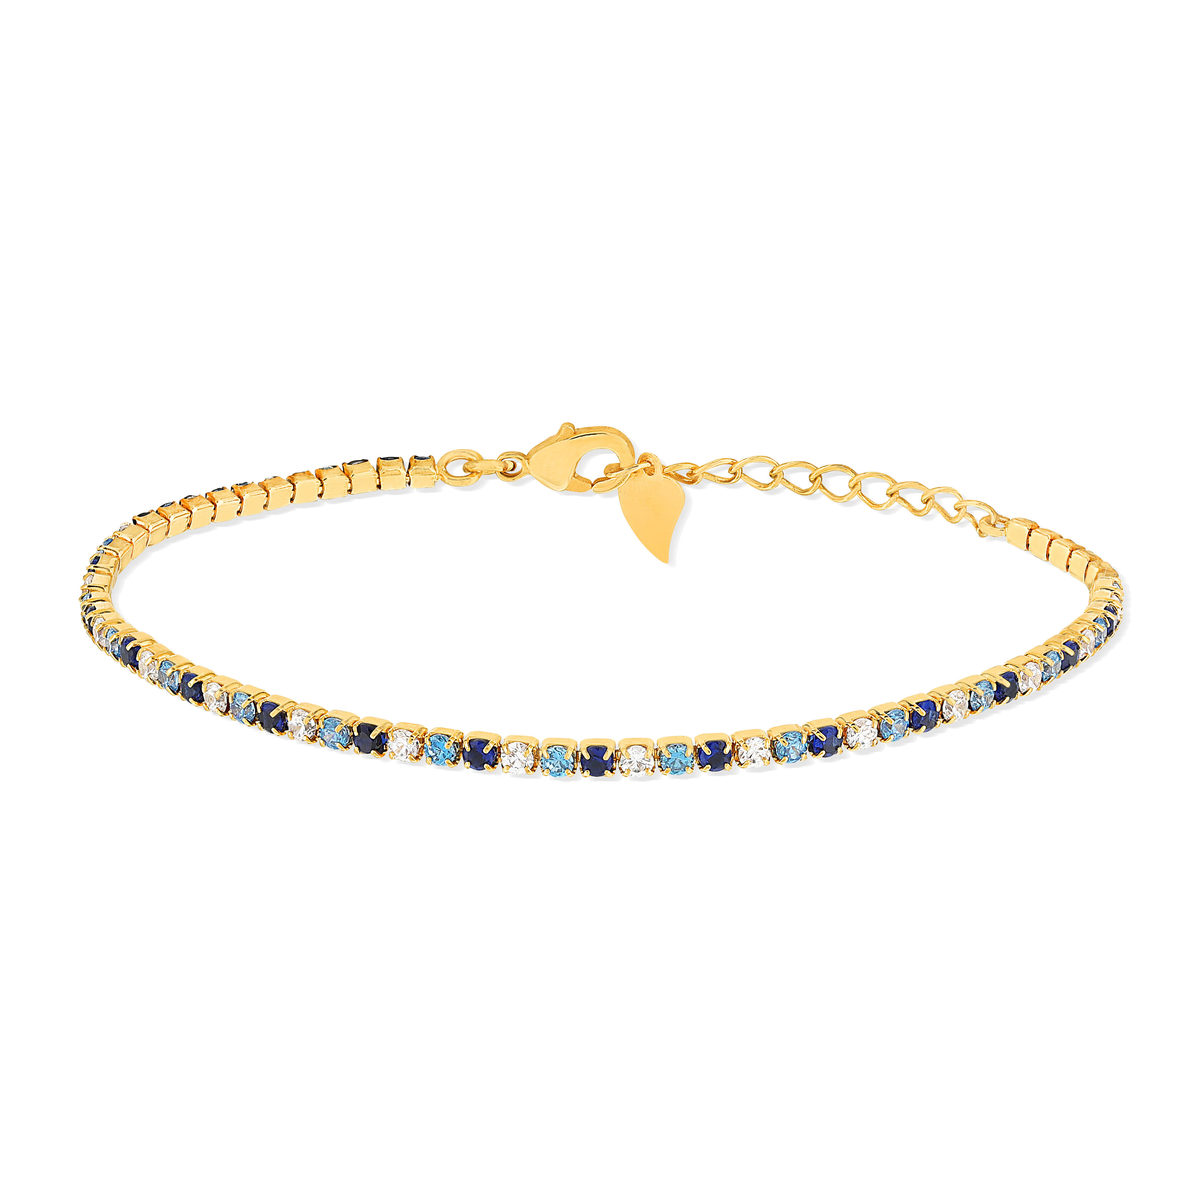 Bracelet tennis plaqué or zirconias bleus et blancs 18 cm - vue 2